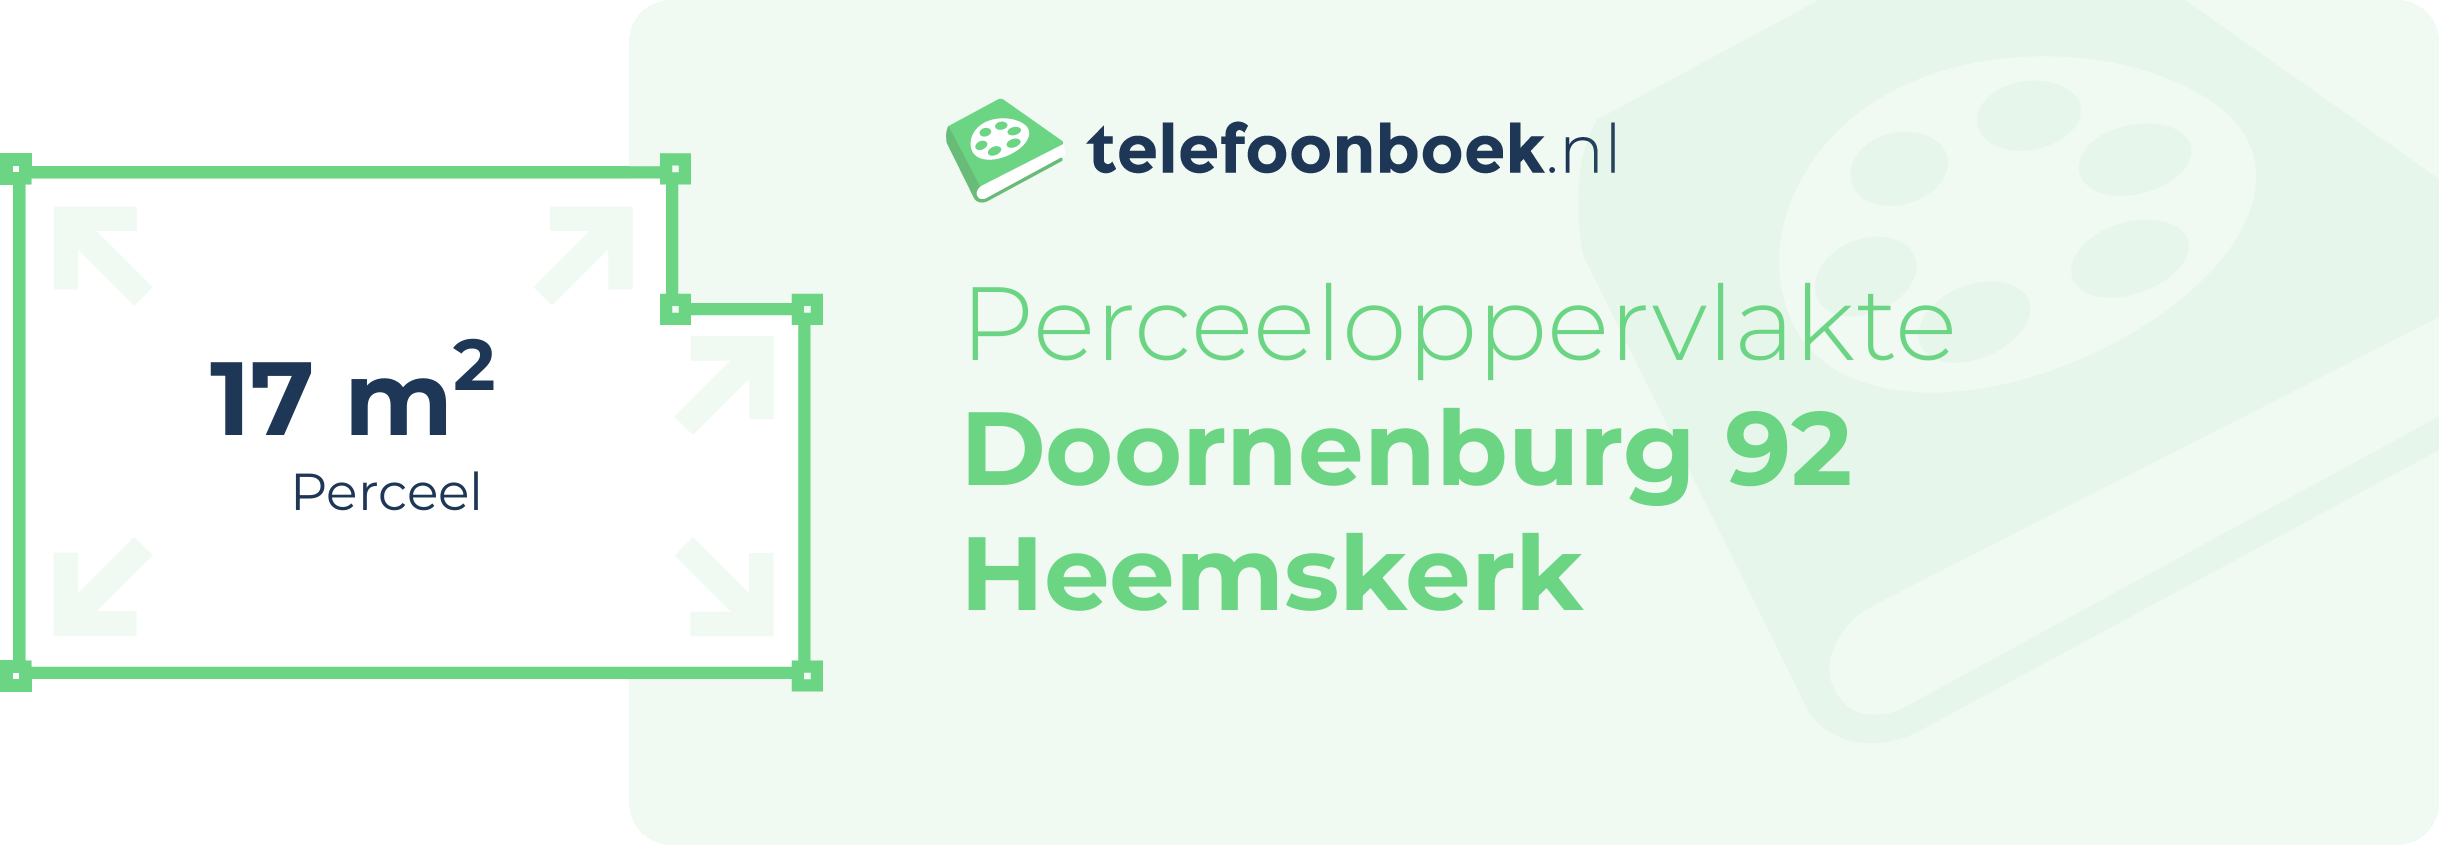 Perceeloppervlakte Doornenburg 92 Heemskerk